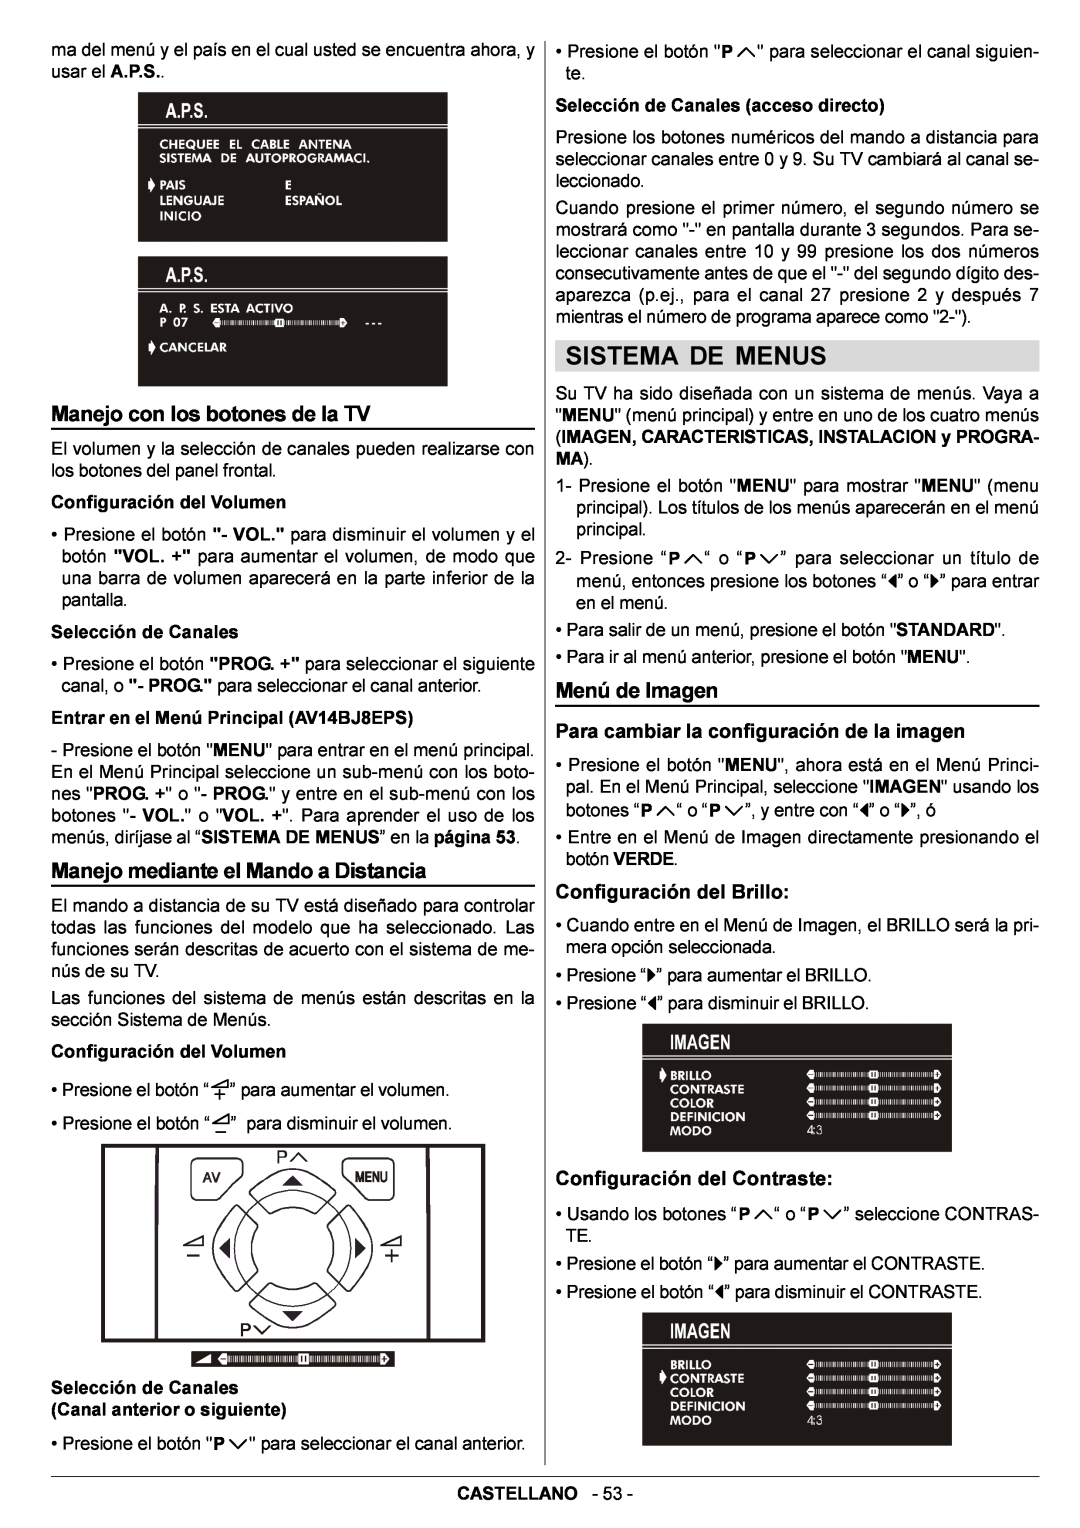 JVC AV14BJ8EPS Sistema De Menus, Manejo con los botones de la TV, Manejo mediante el Mando a Distancia, Menú de Imagen 